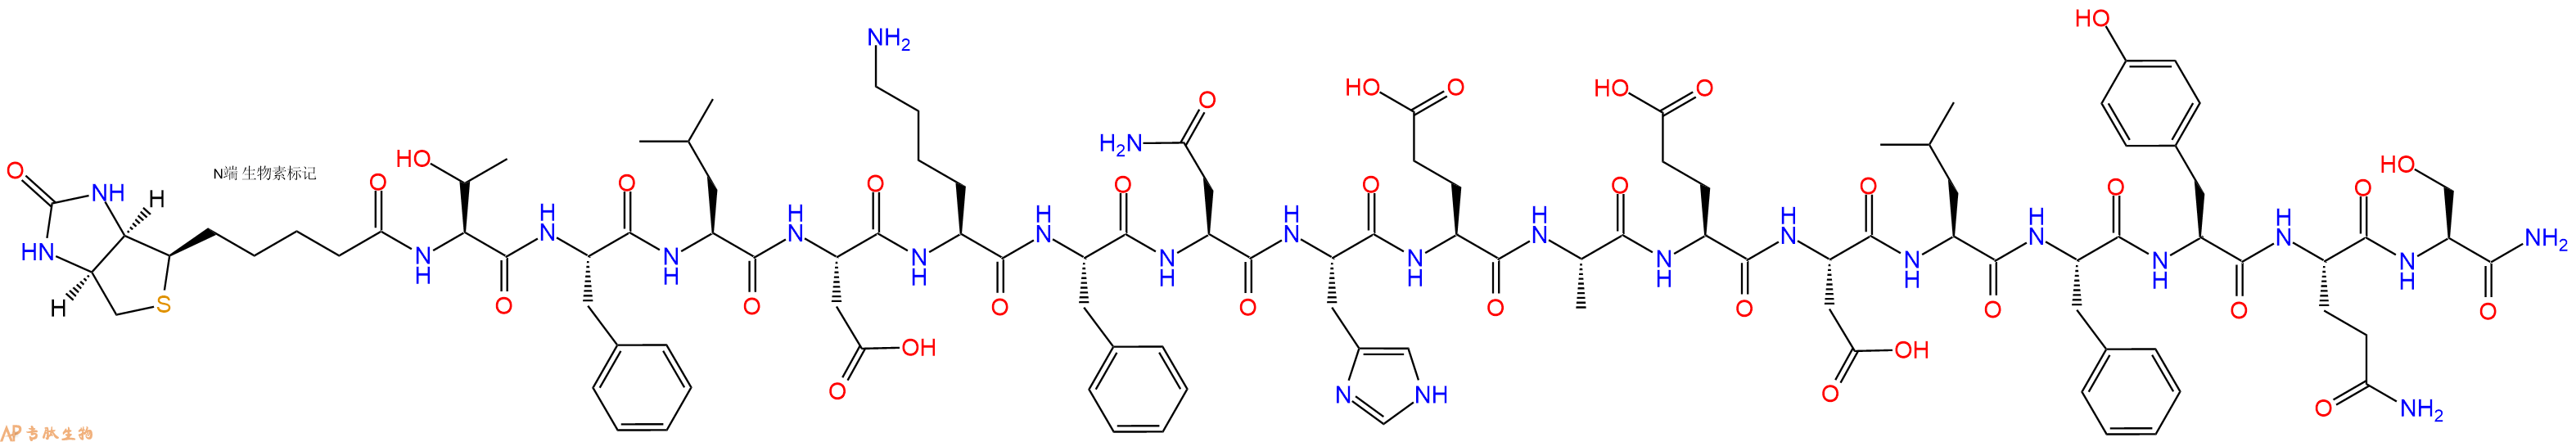 专肽生物产品Biotin-Thr-Phe-Leu-Asp-Lys-Phe-Asn-His-Glu-Ala-Glu